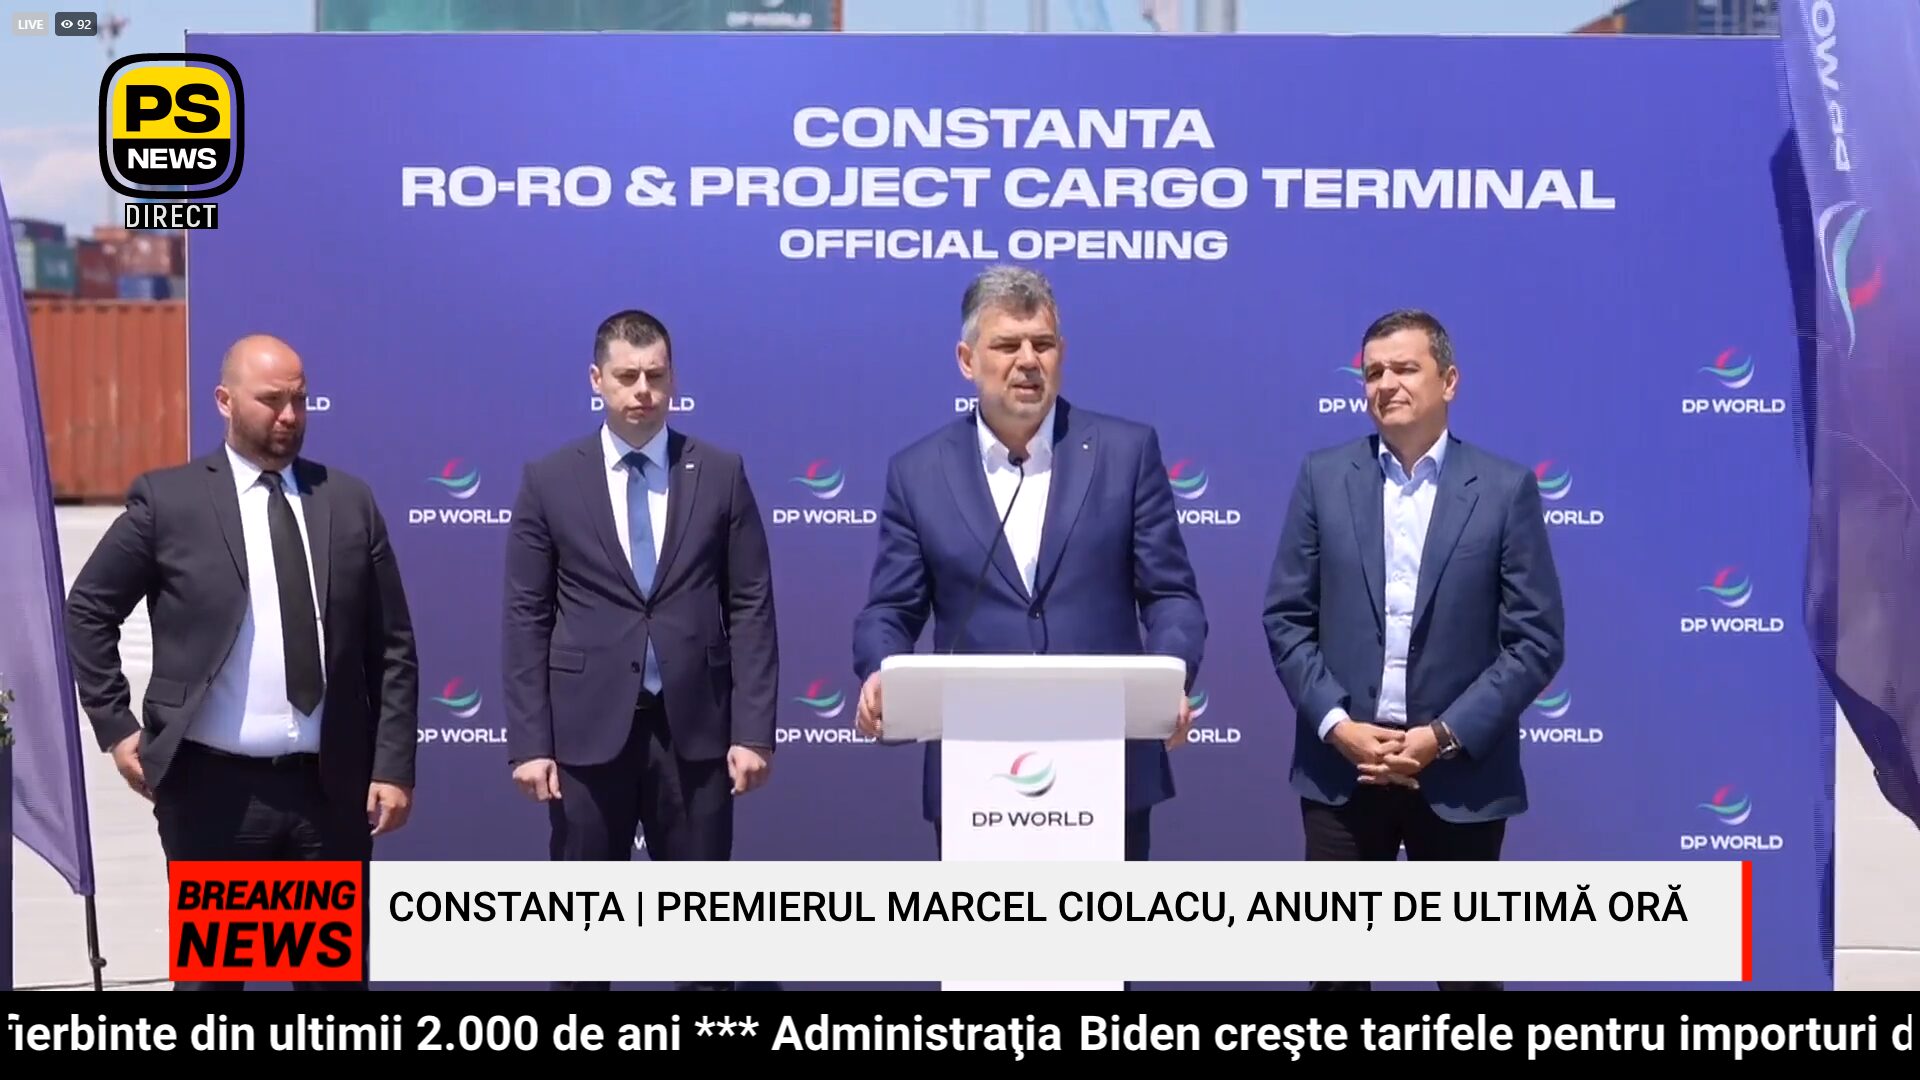 PS News TV | Premierul Marcel Ciolacu, anunț de ultimă oră de la Constanța